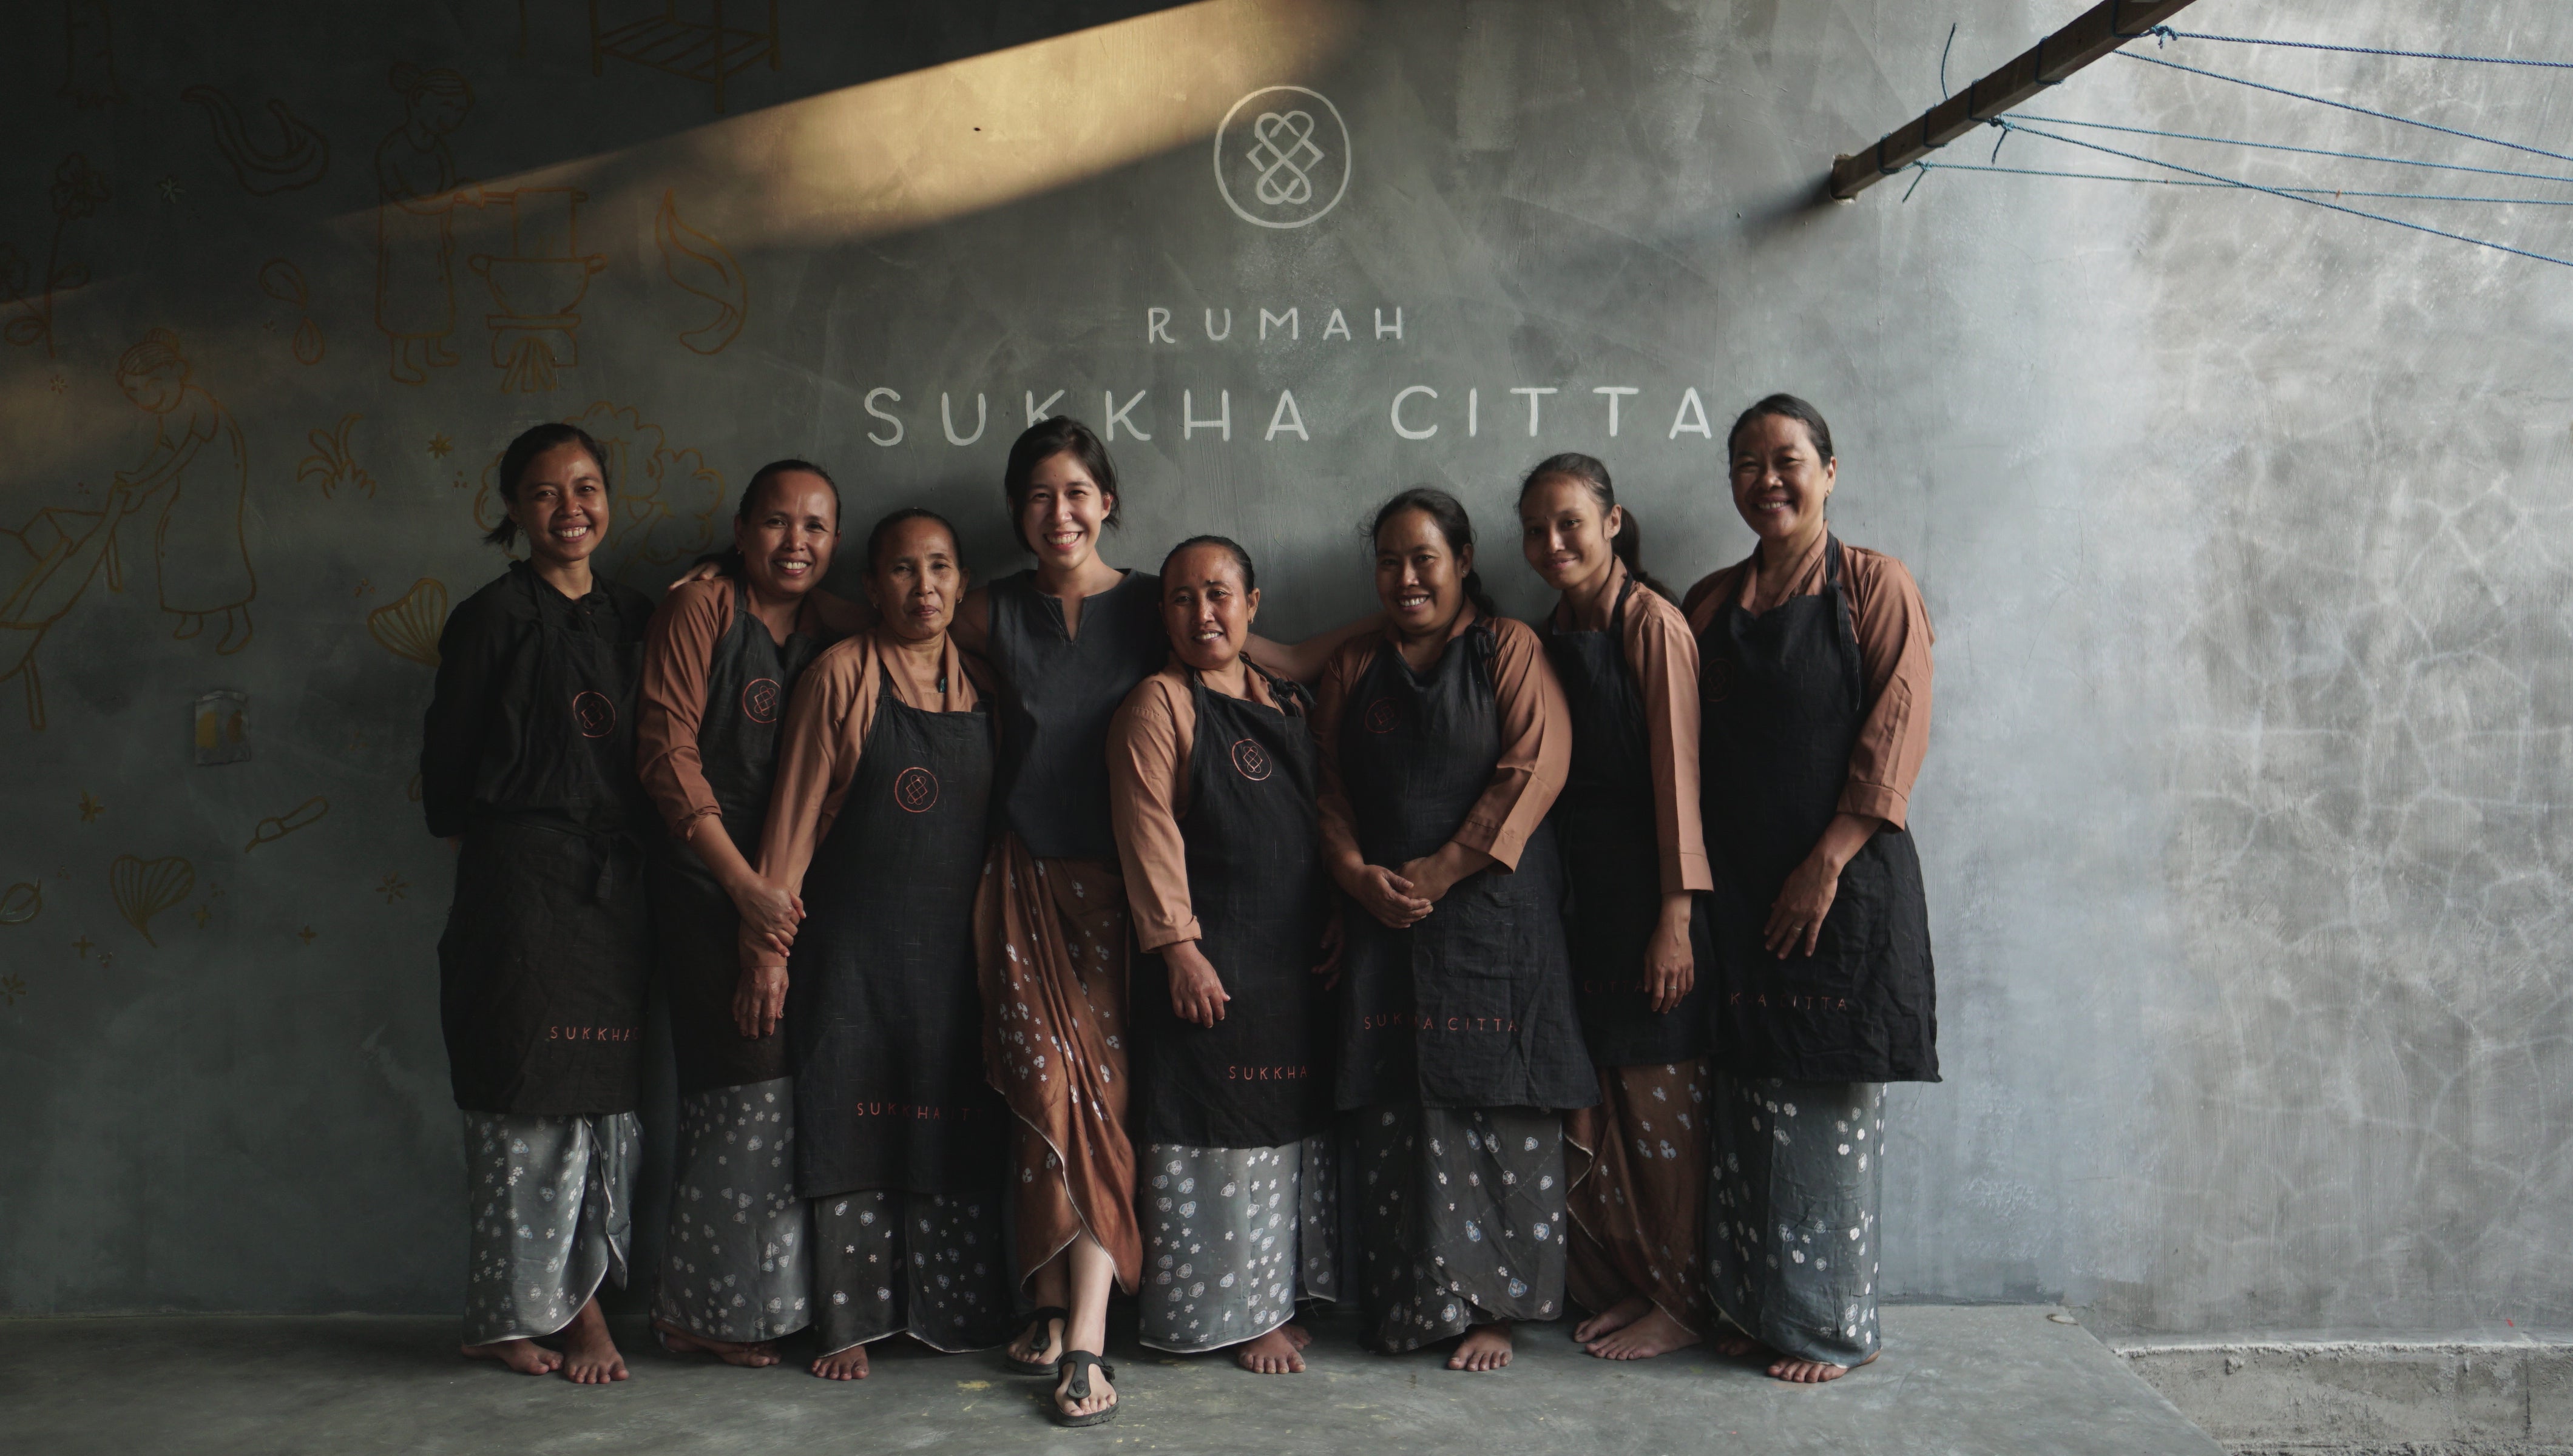 Rumah SukkhaCitta - Indonesia's First Craft Schools